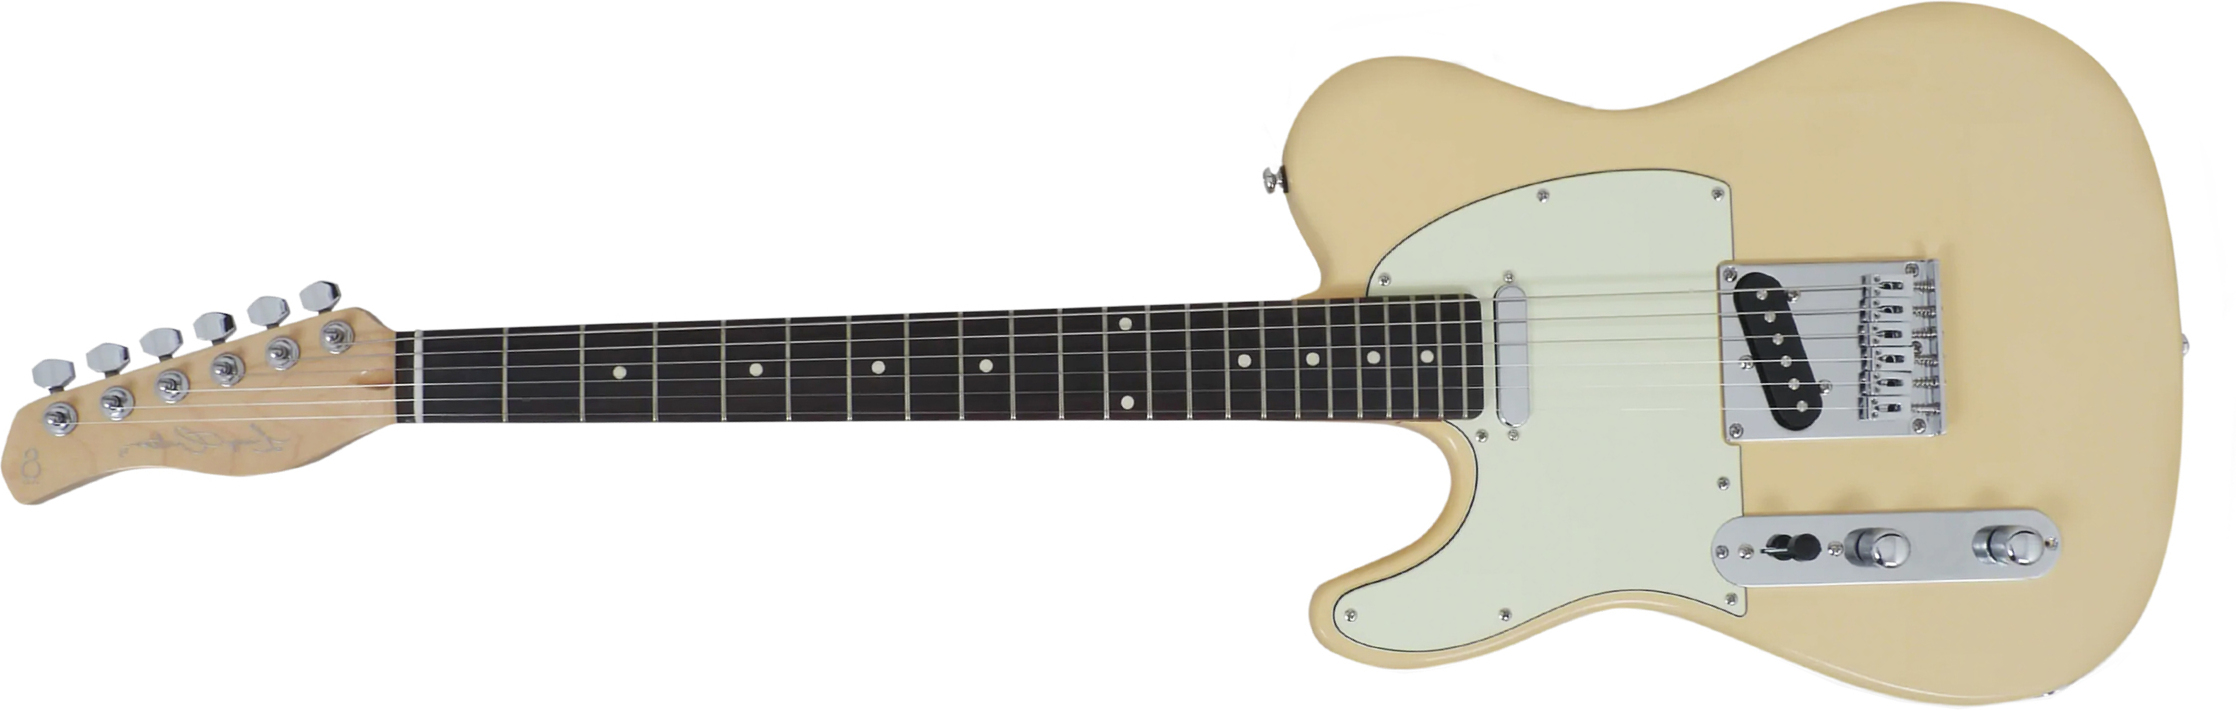 Sire Larry Carlton T3 Lh Signature Gaucher 2s Ht Rw - Vintage White - Linkshandige elektrische gitaar - Main picture